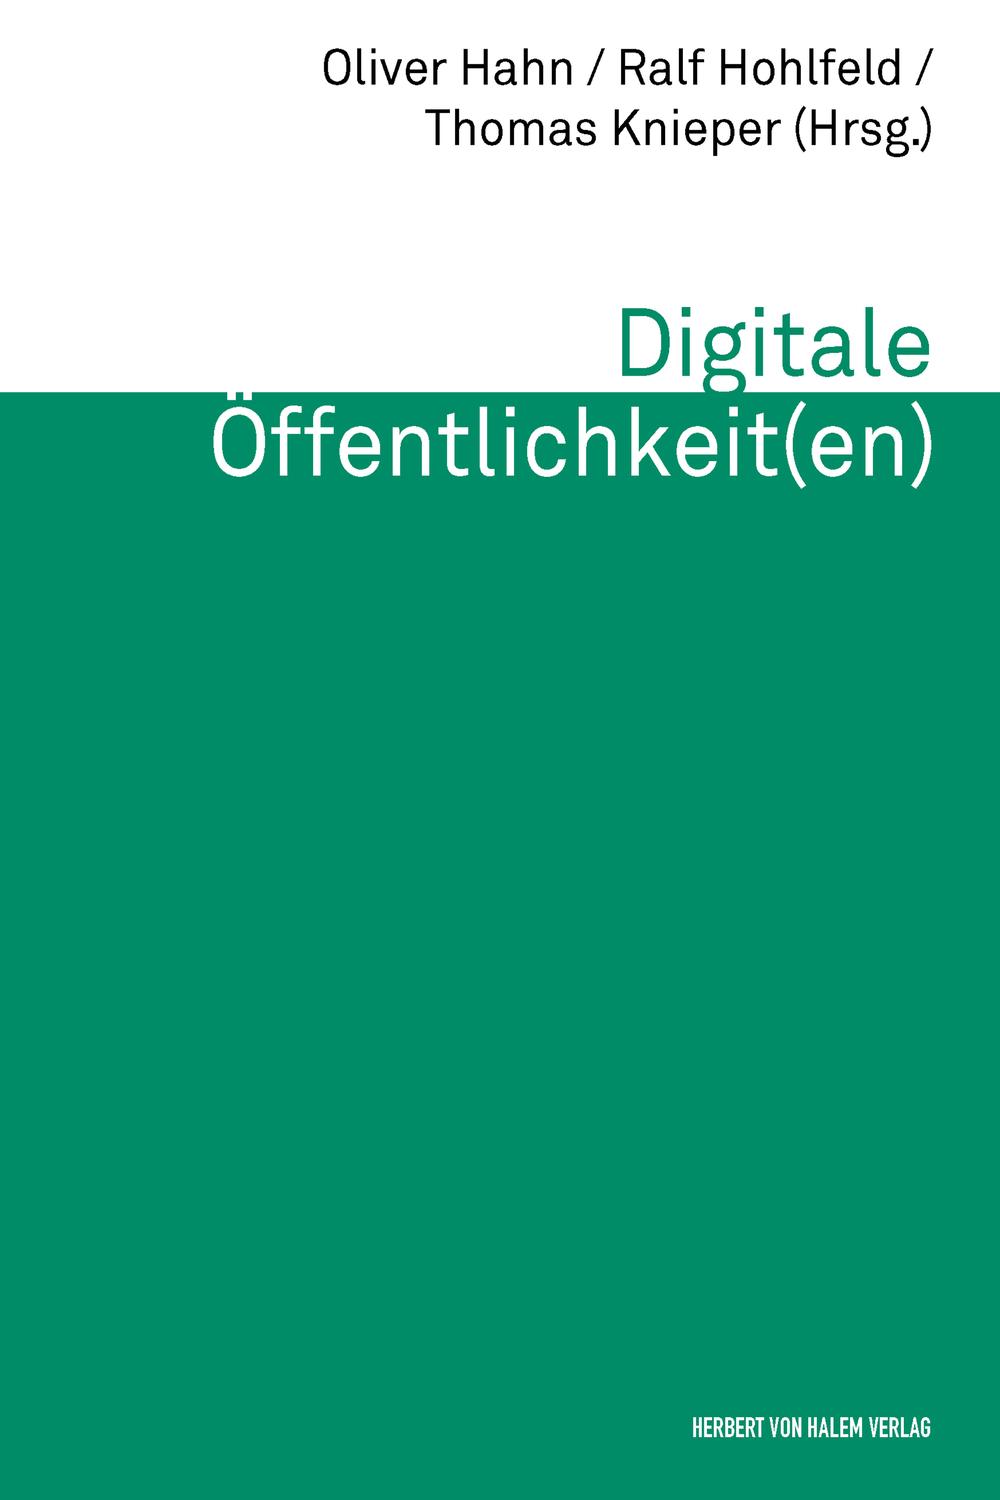 Digitale Öffentlichkeit(en) - Ralf Hohlfeld, Thomas Knieper, Oliver Hahn